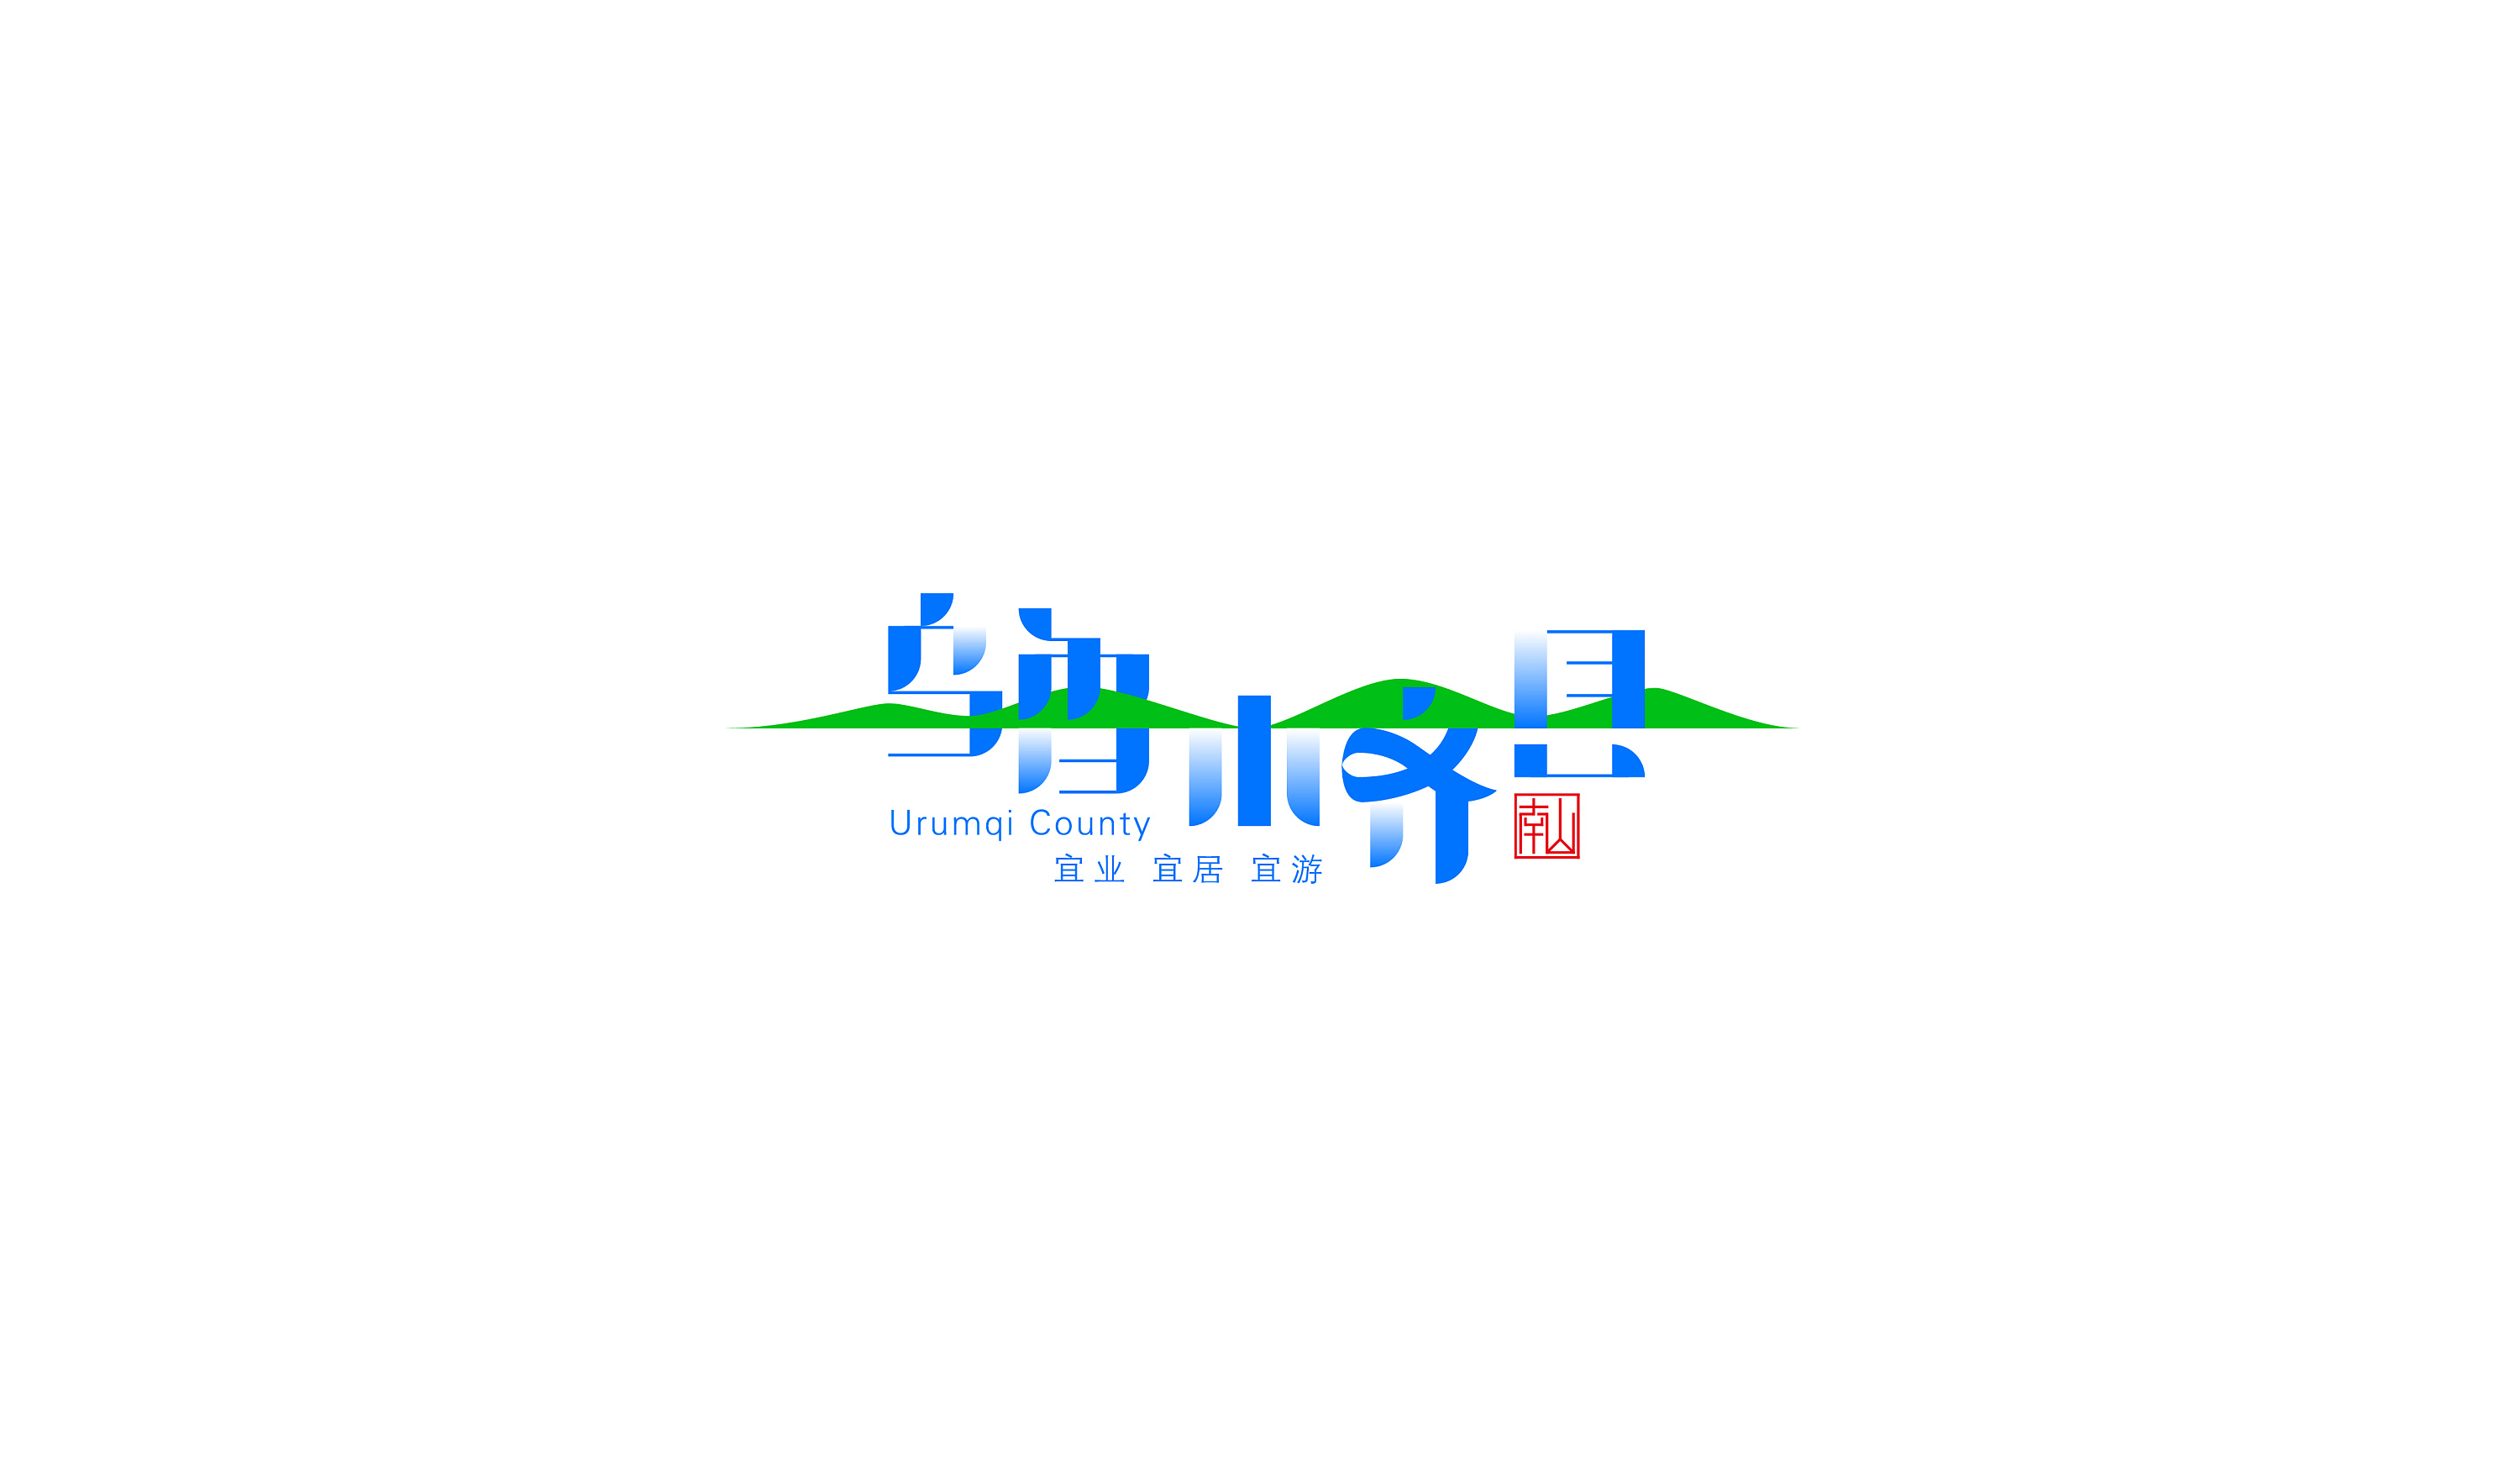 新疆特色logo图片